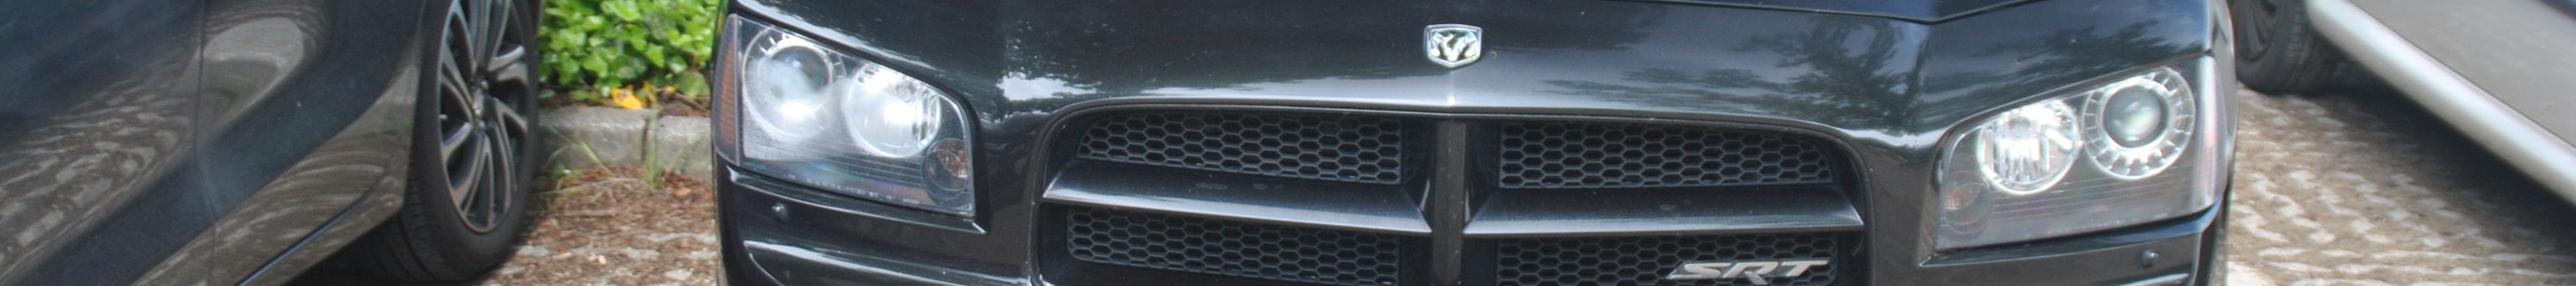 Dodge Charger SRT-8